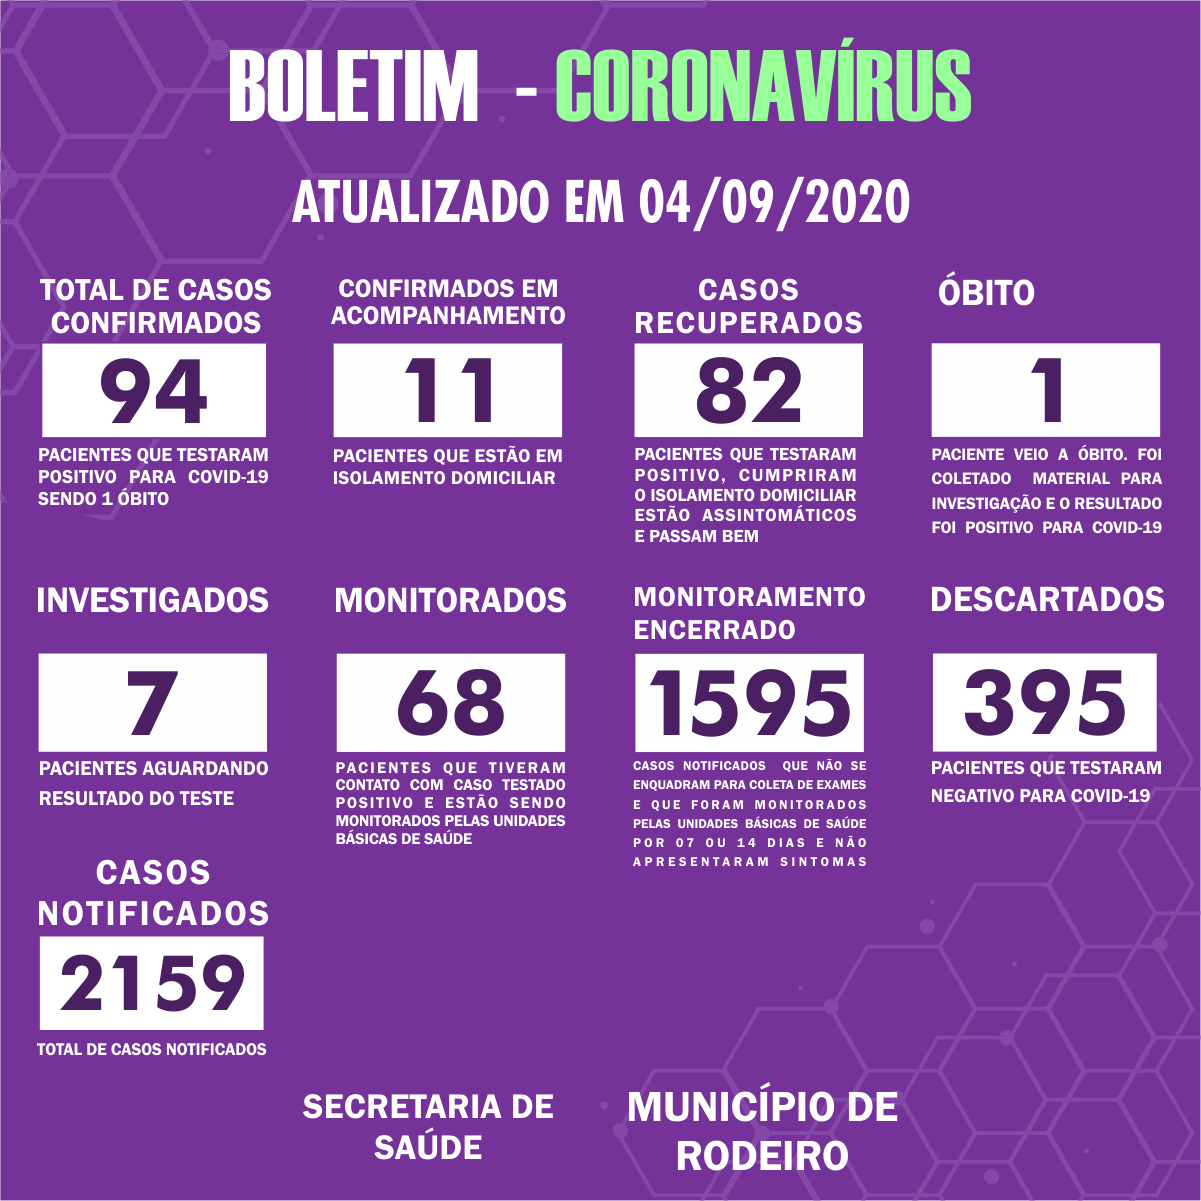 Boletim Epidemiológico do Município de Rodeiro sobre coronavírus, atualizado em 04/09/2020